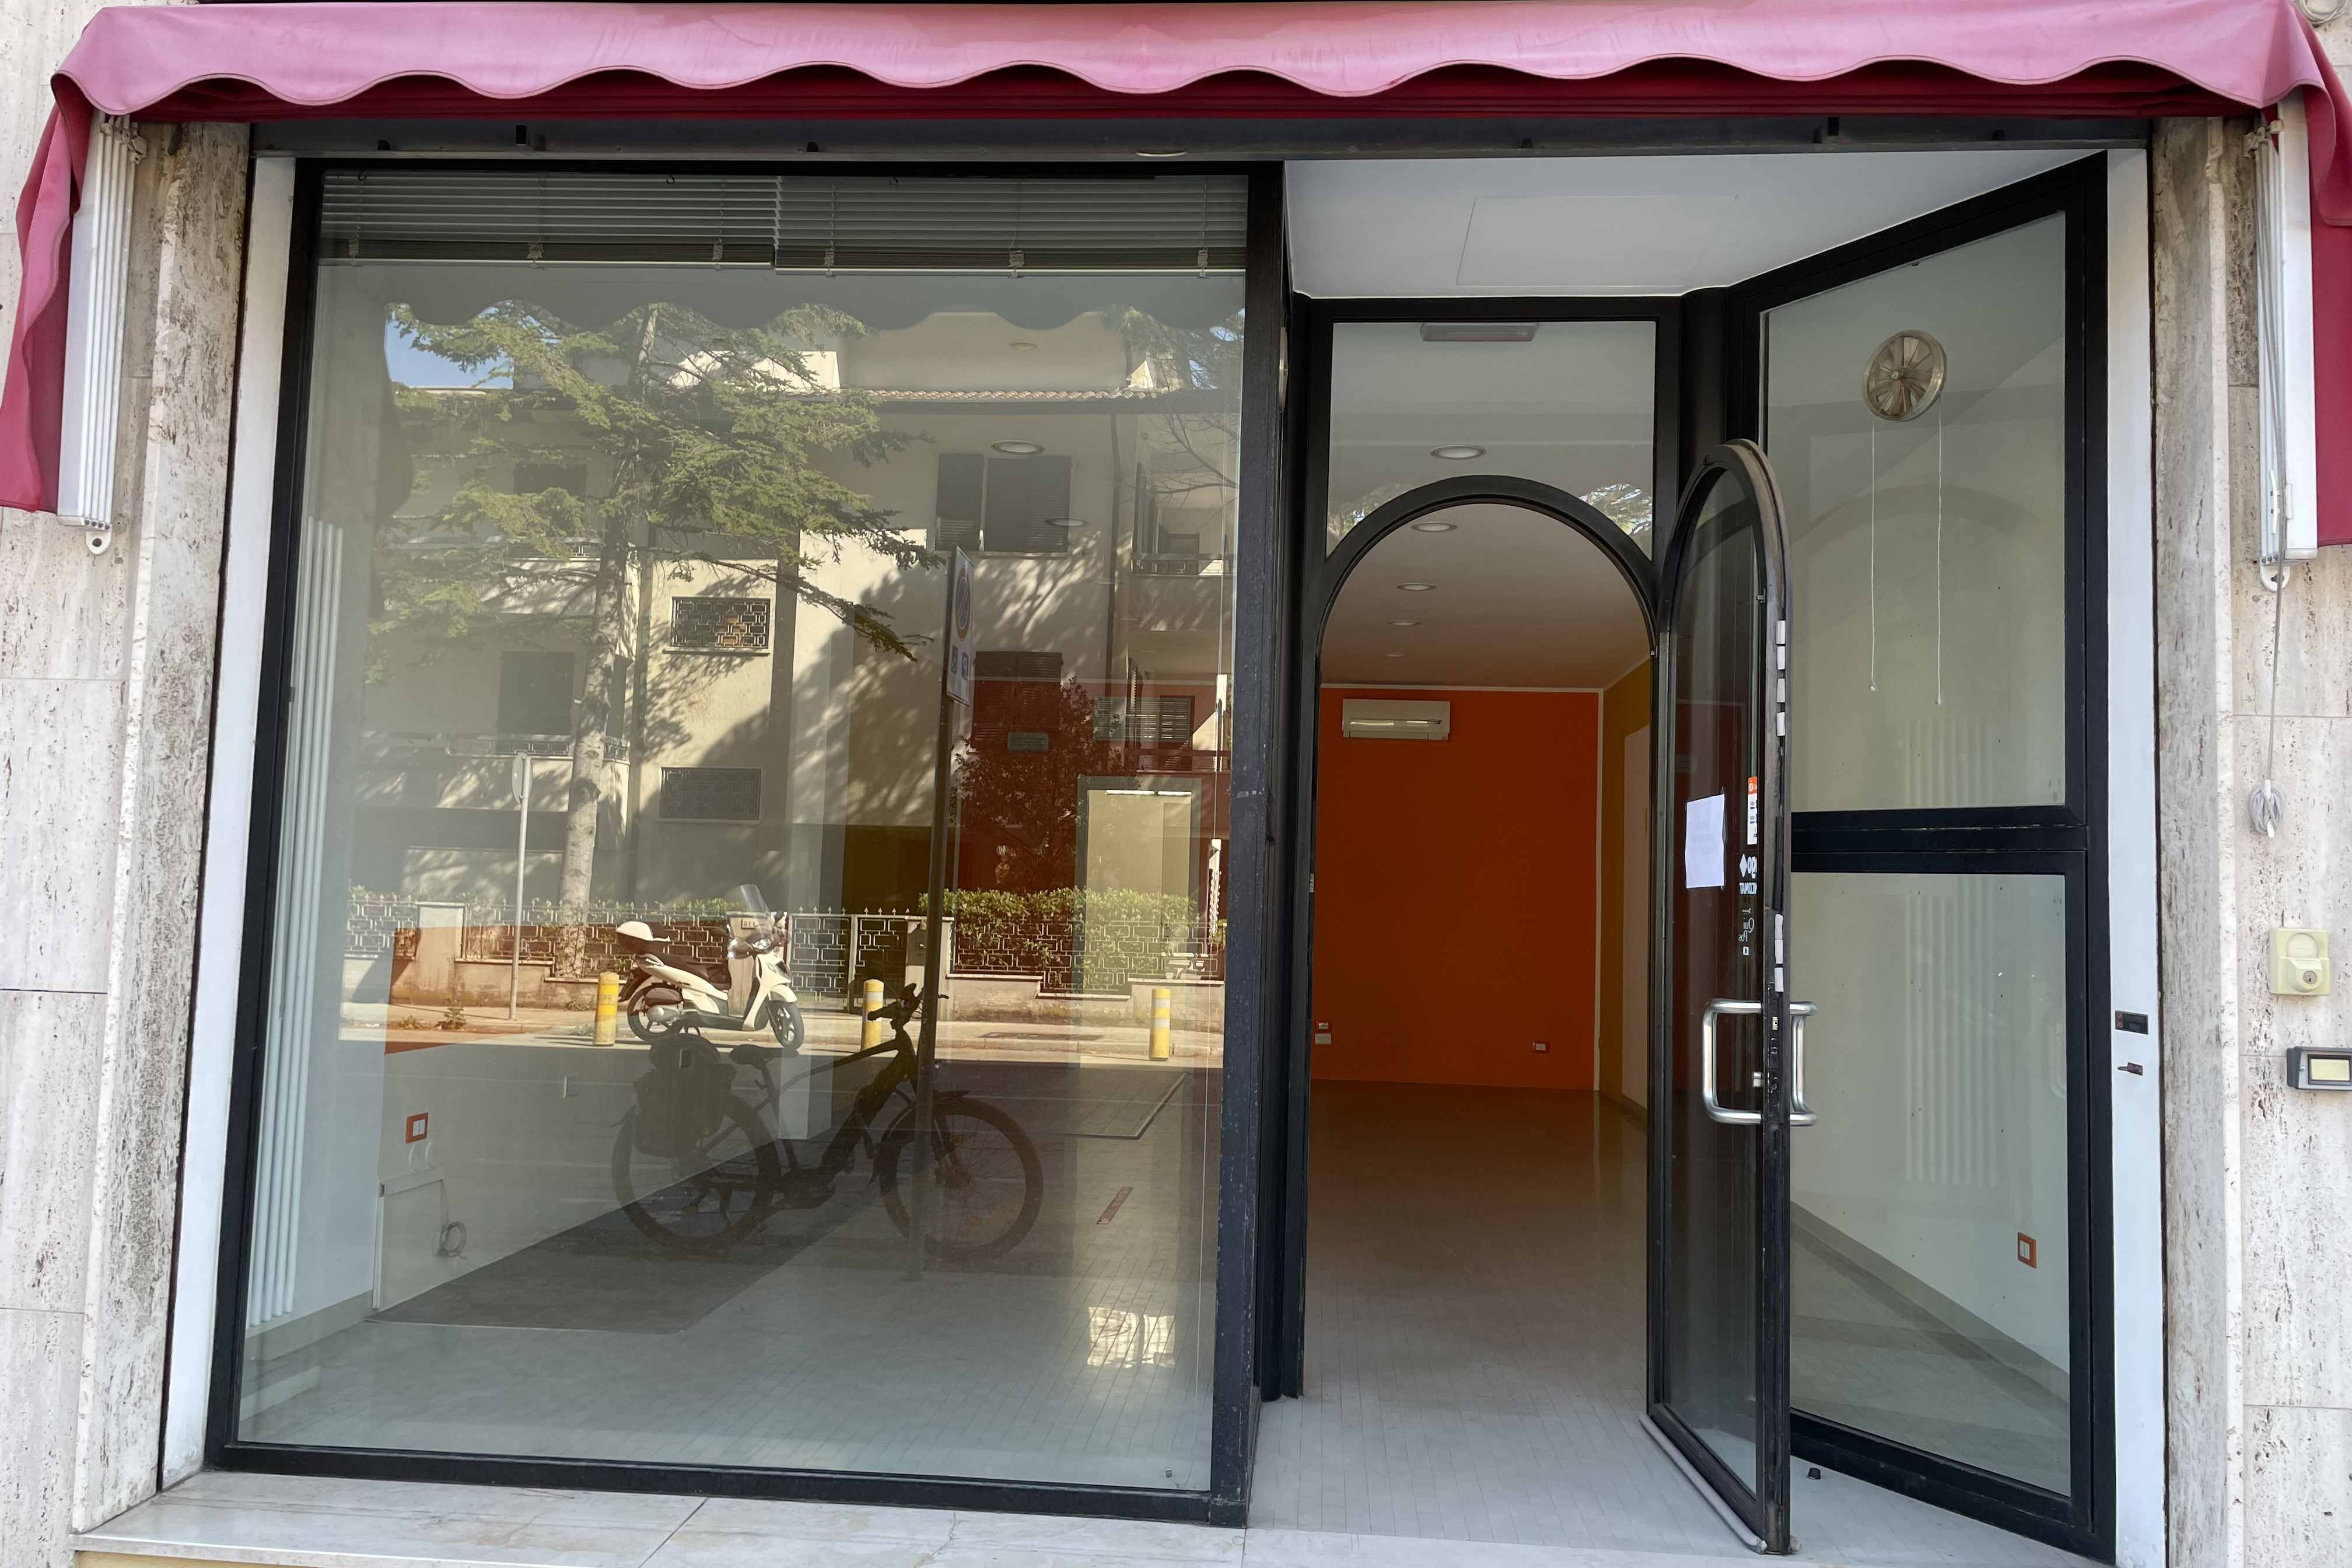 Vendita negozio Pesaro - Zona Muraglia (NE200)